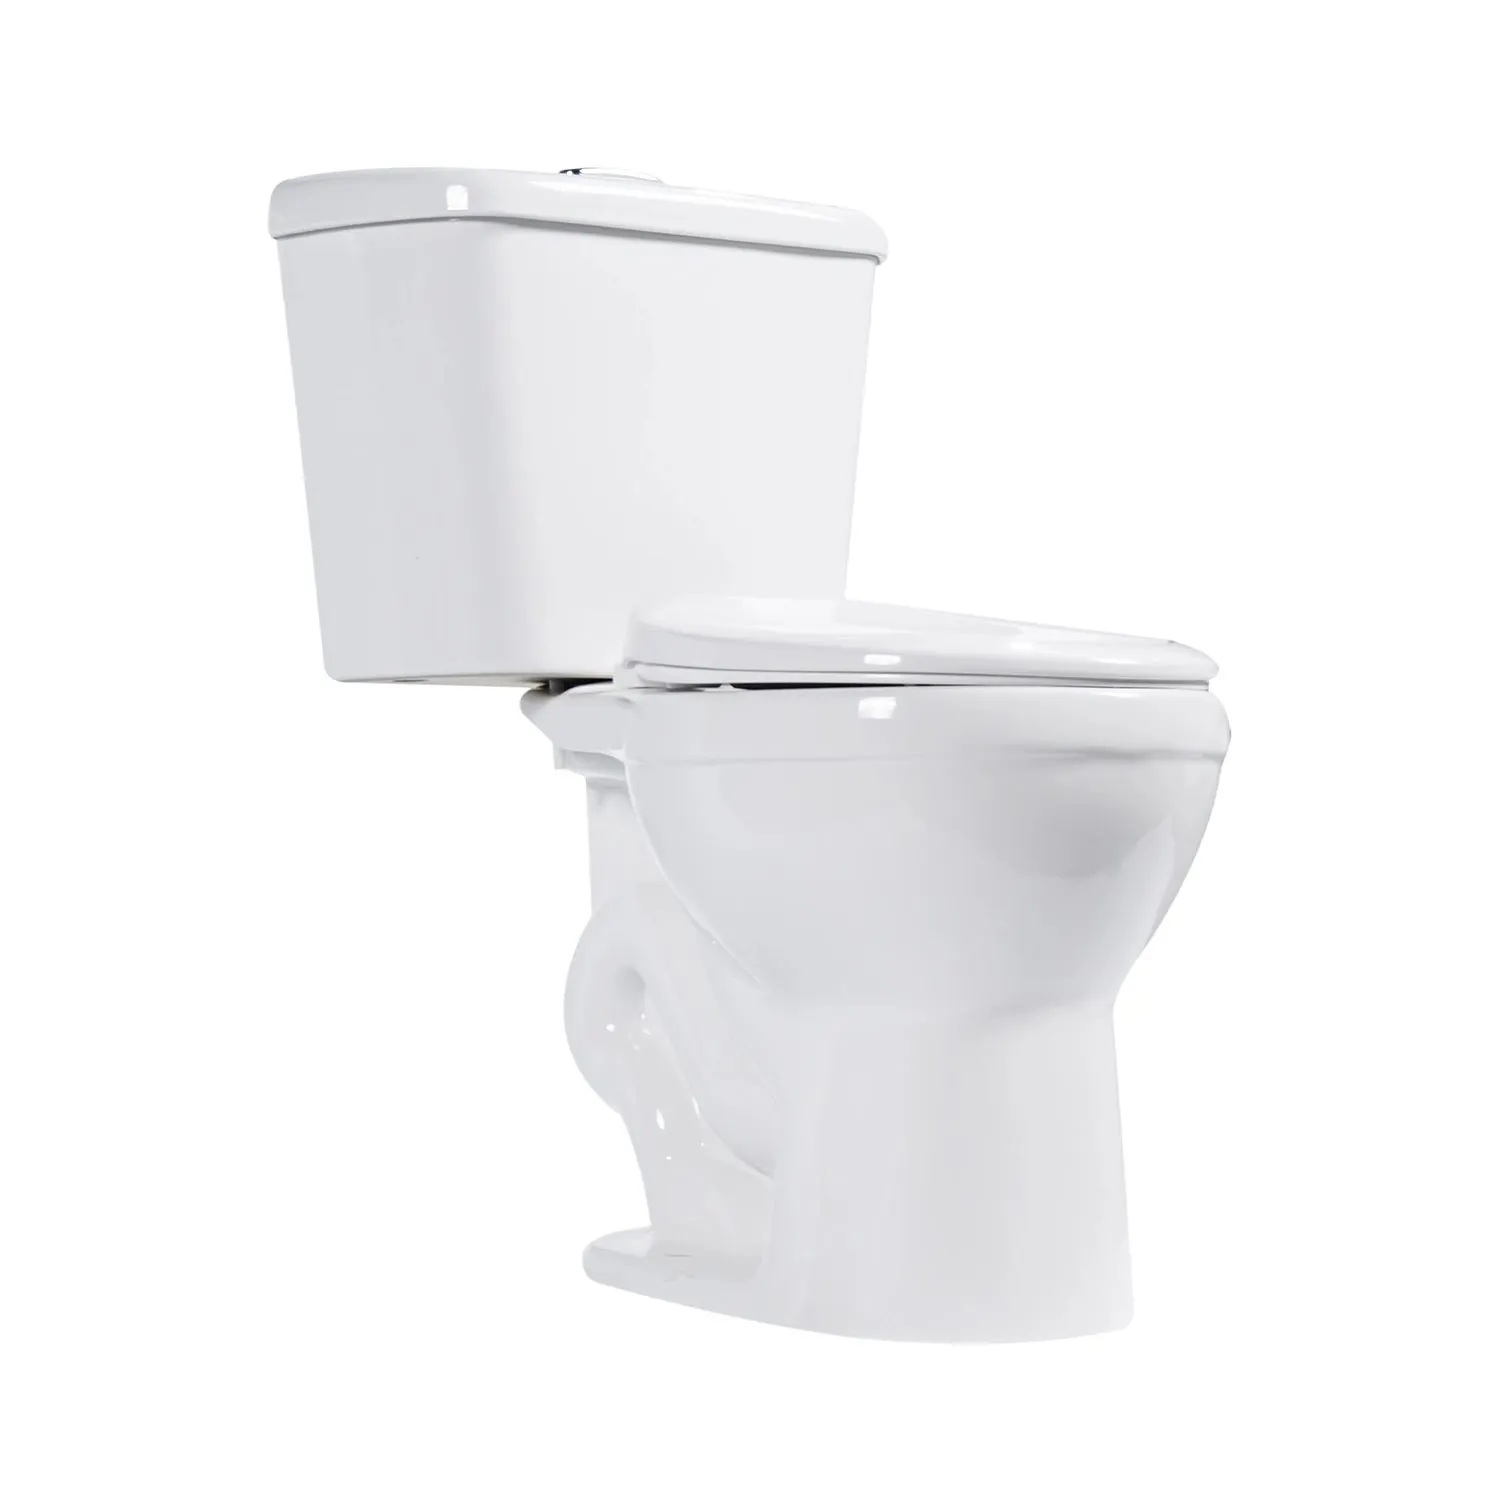 क्यूपीसी प्रमाणित टू-पीस शौचालय, एडीए पानी की बचत करने वाला शौचालय, आधुनिक डिजाइन 12 इंच रफिंग-इन शौचालय गोल आकार के कटोरे के साथ